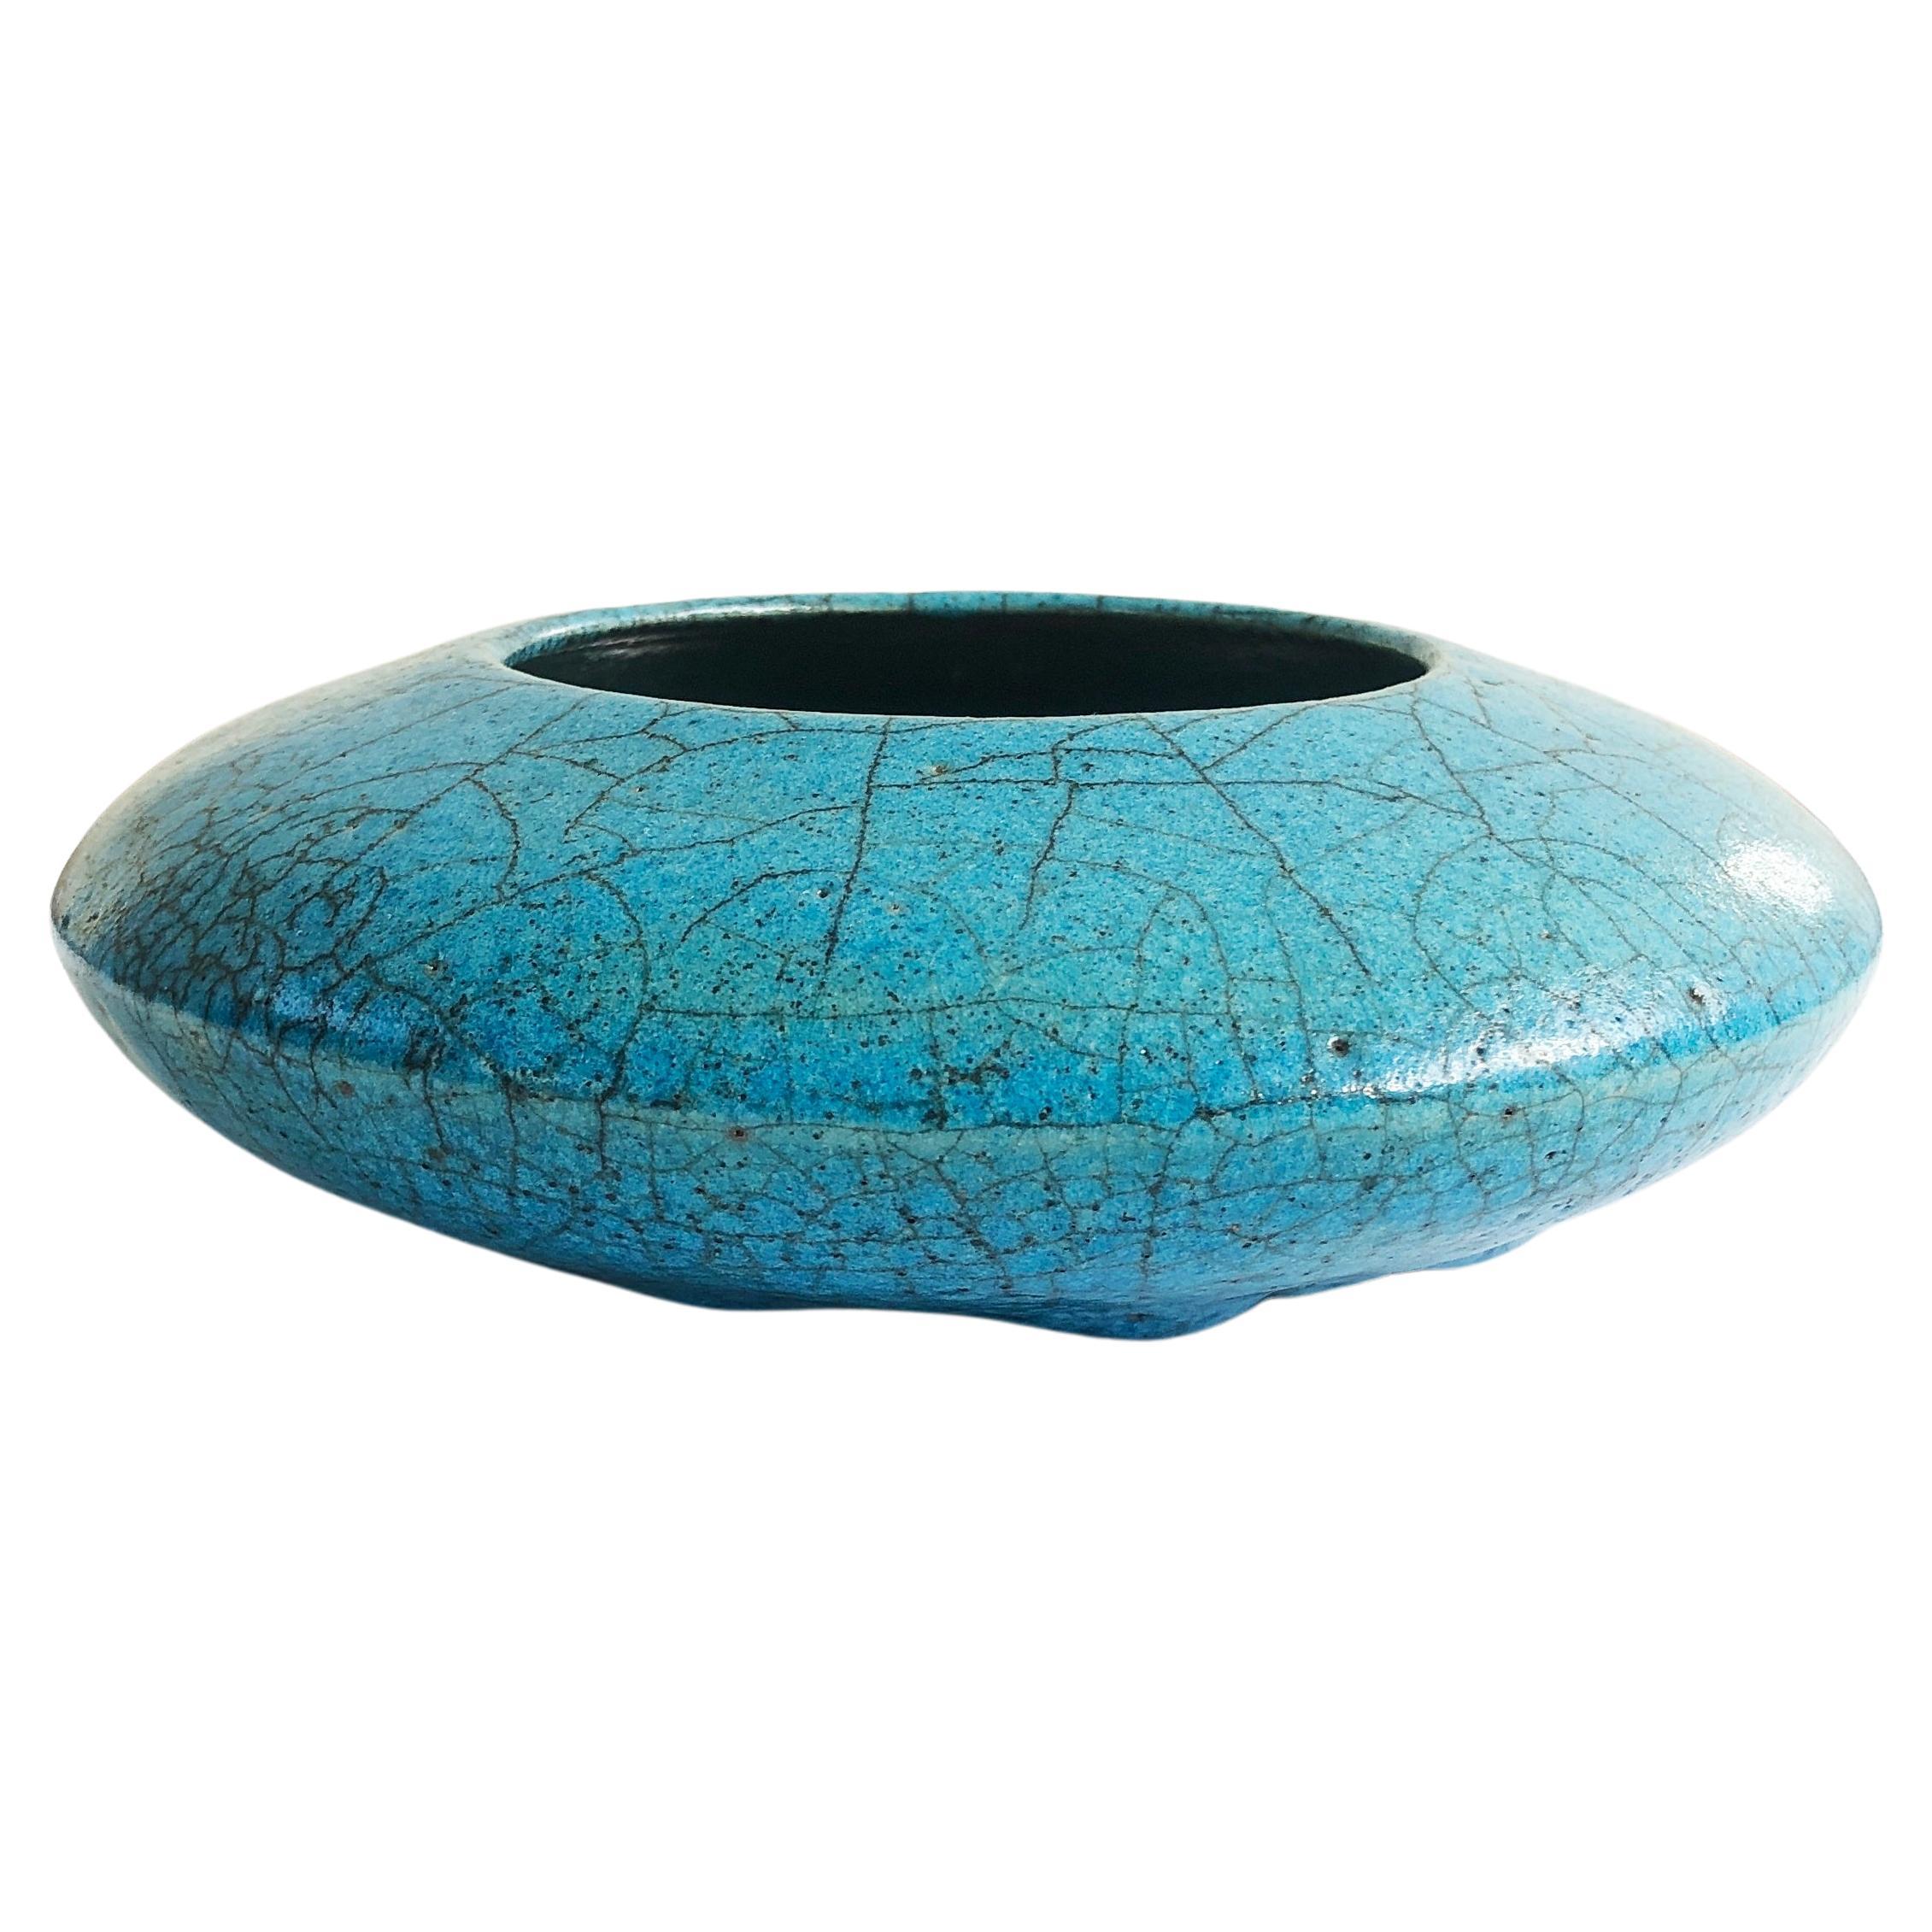 Turquoise Raku Ceramic Vase Discus Japanese Style, ca. 1975, possibly Germany